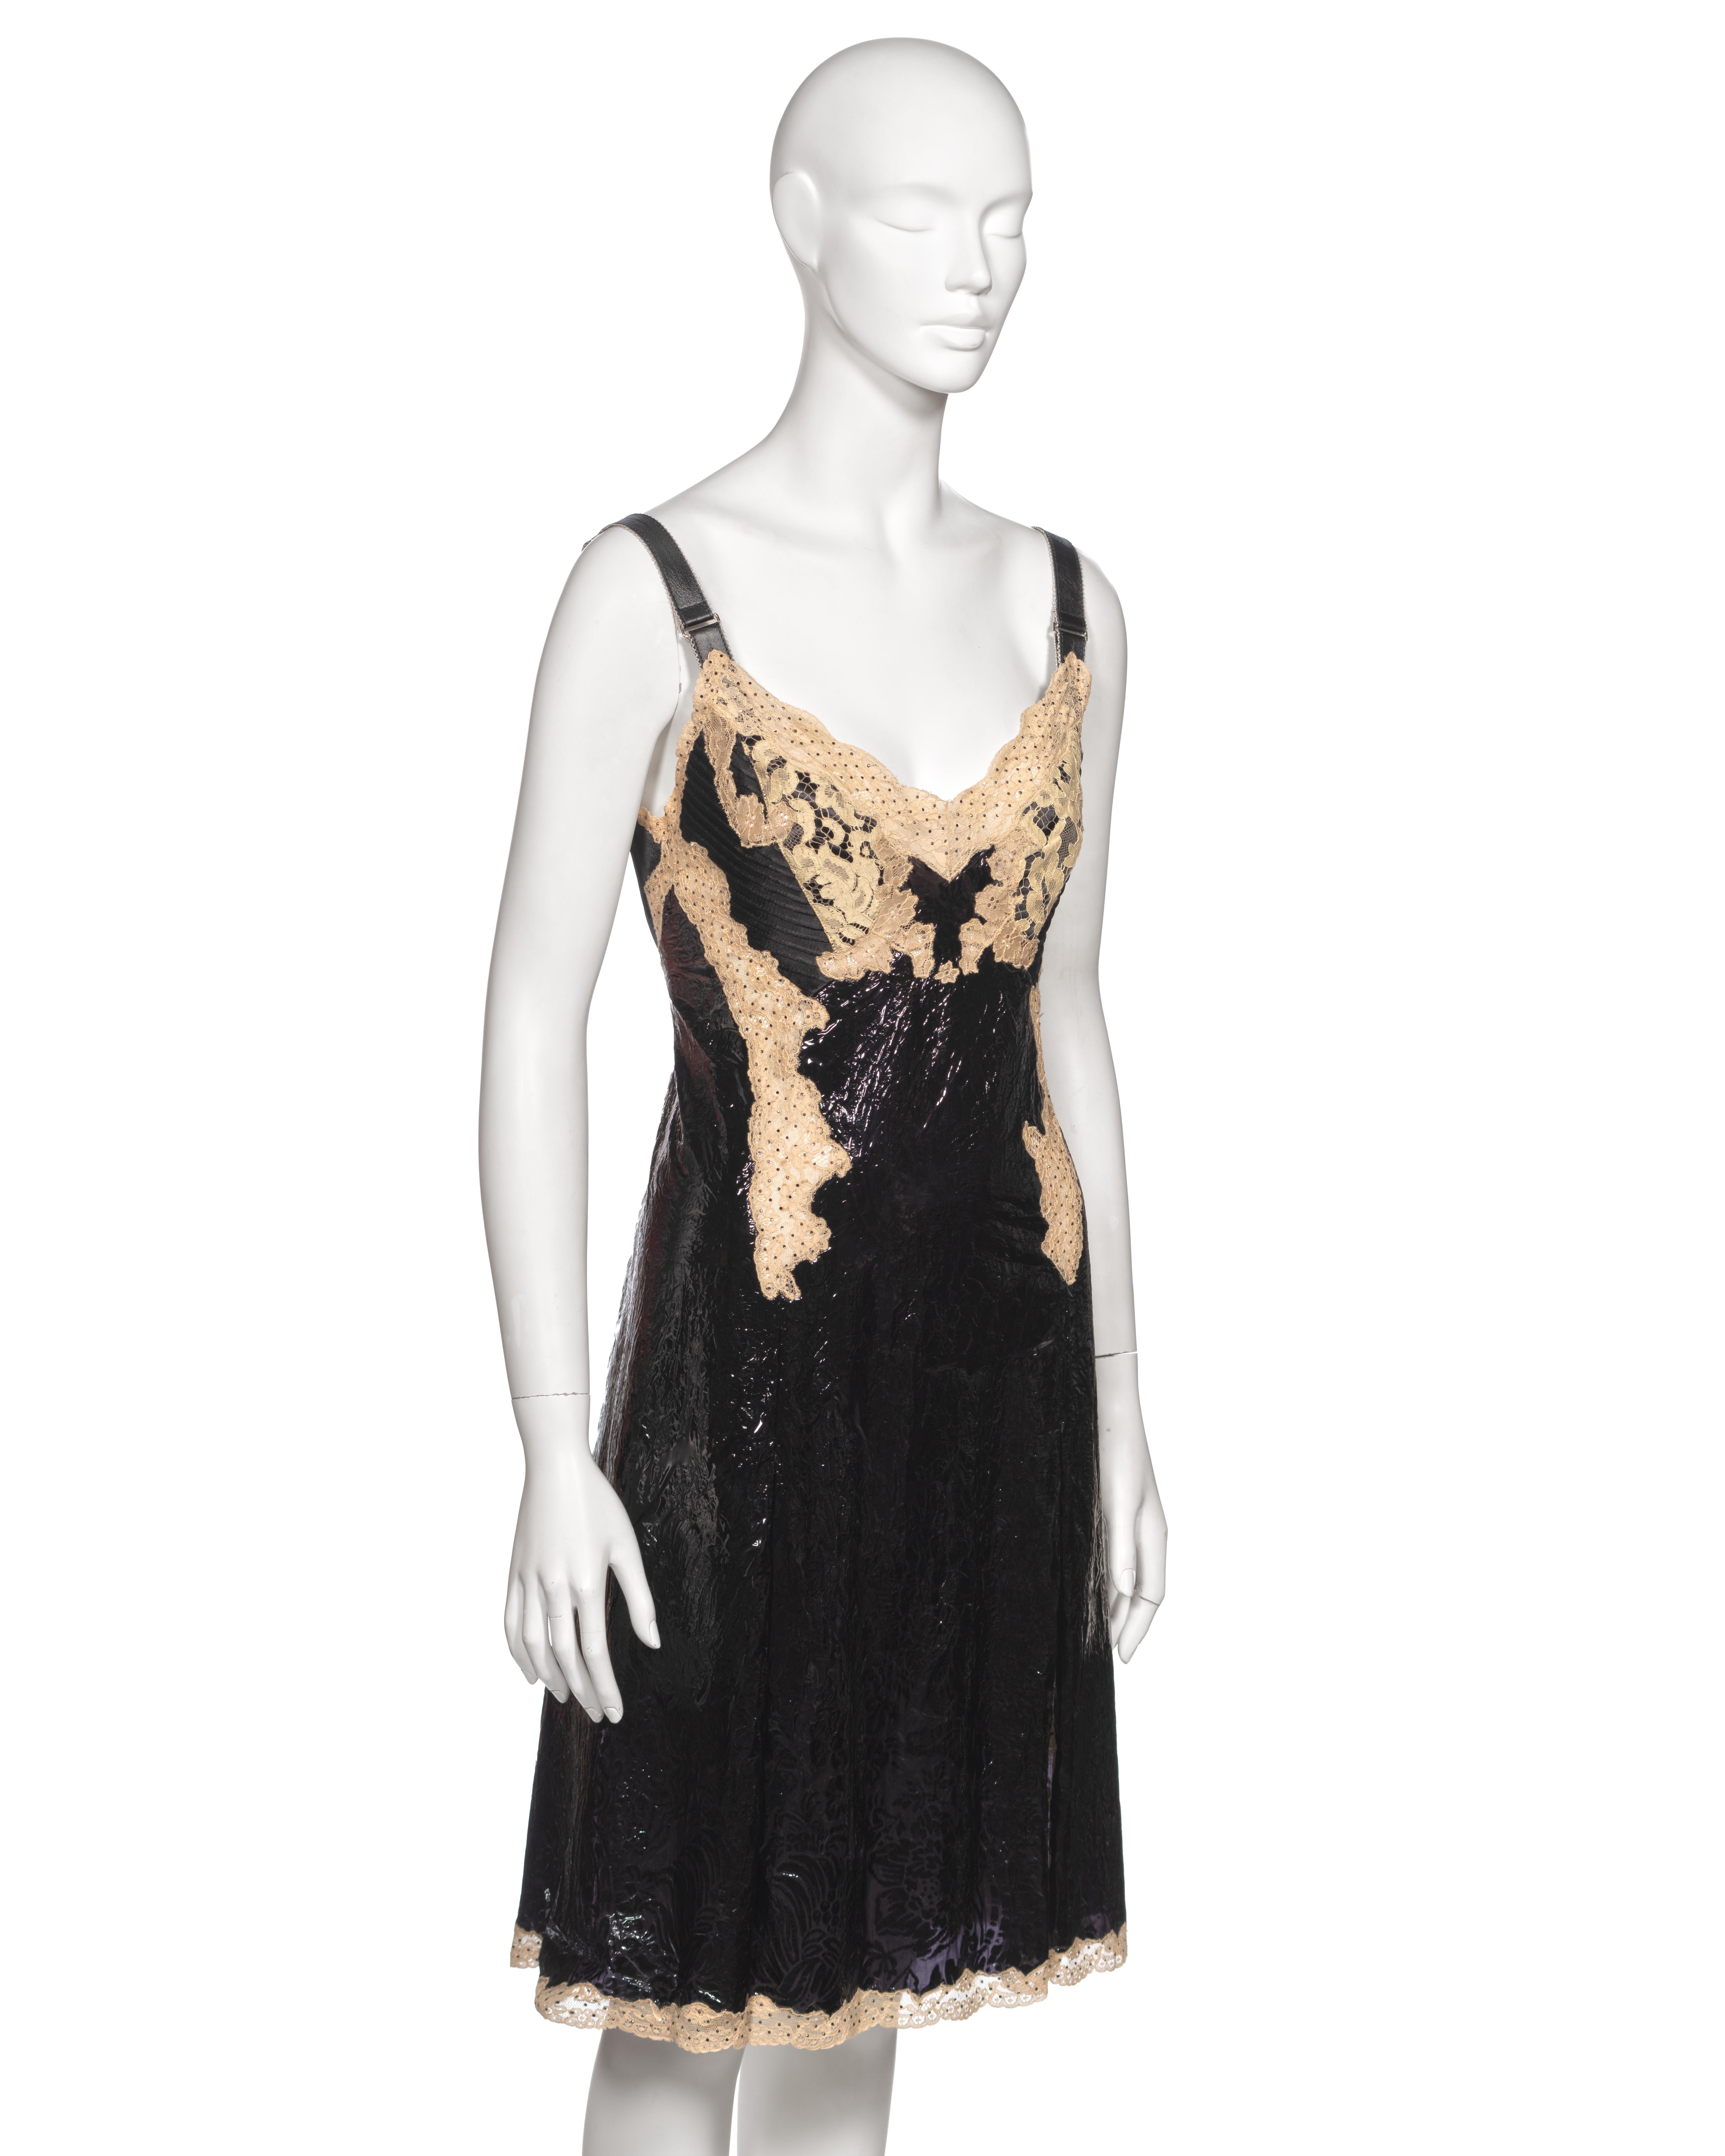 Louis Vuitton by Nicolas Ghesquière Evening Slip Dress Dress with Lace, fw 2017 For Sale 3